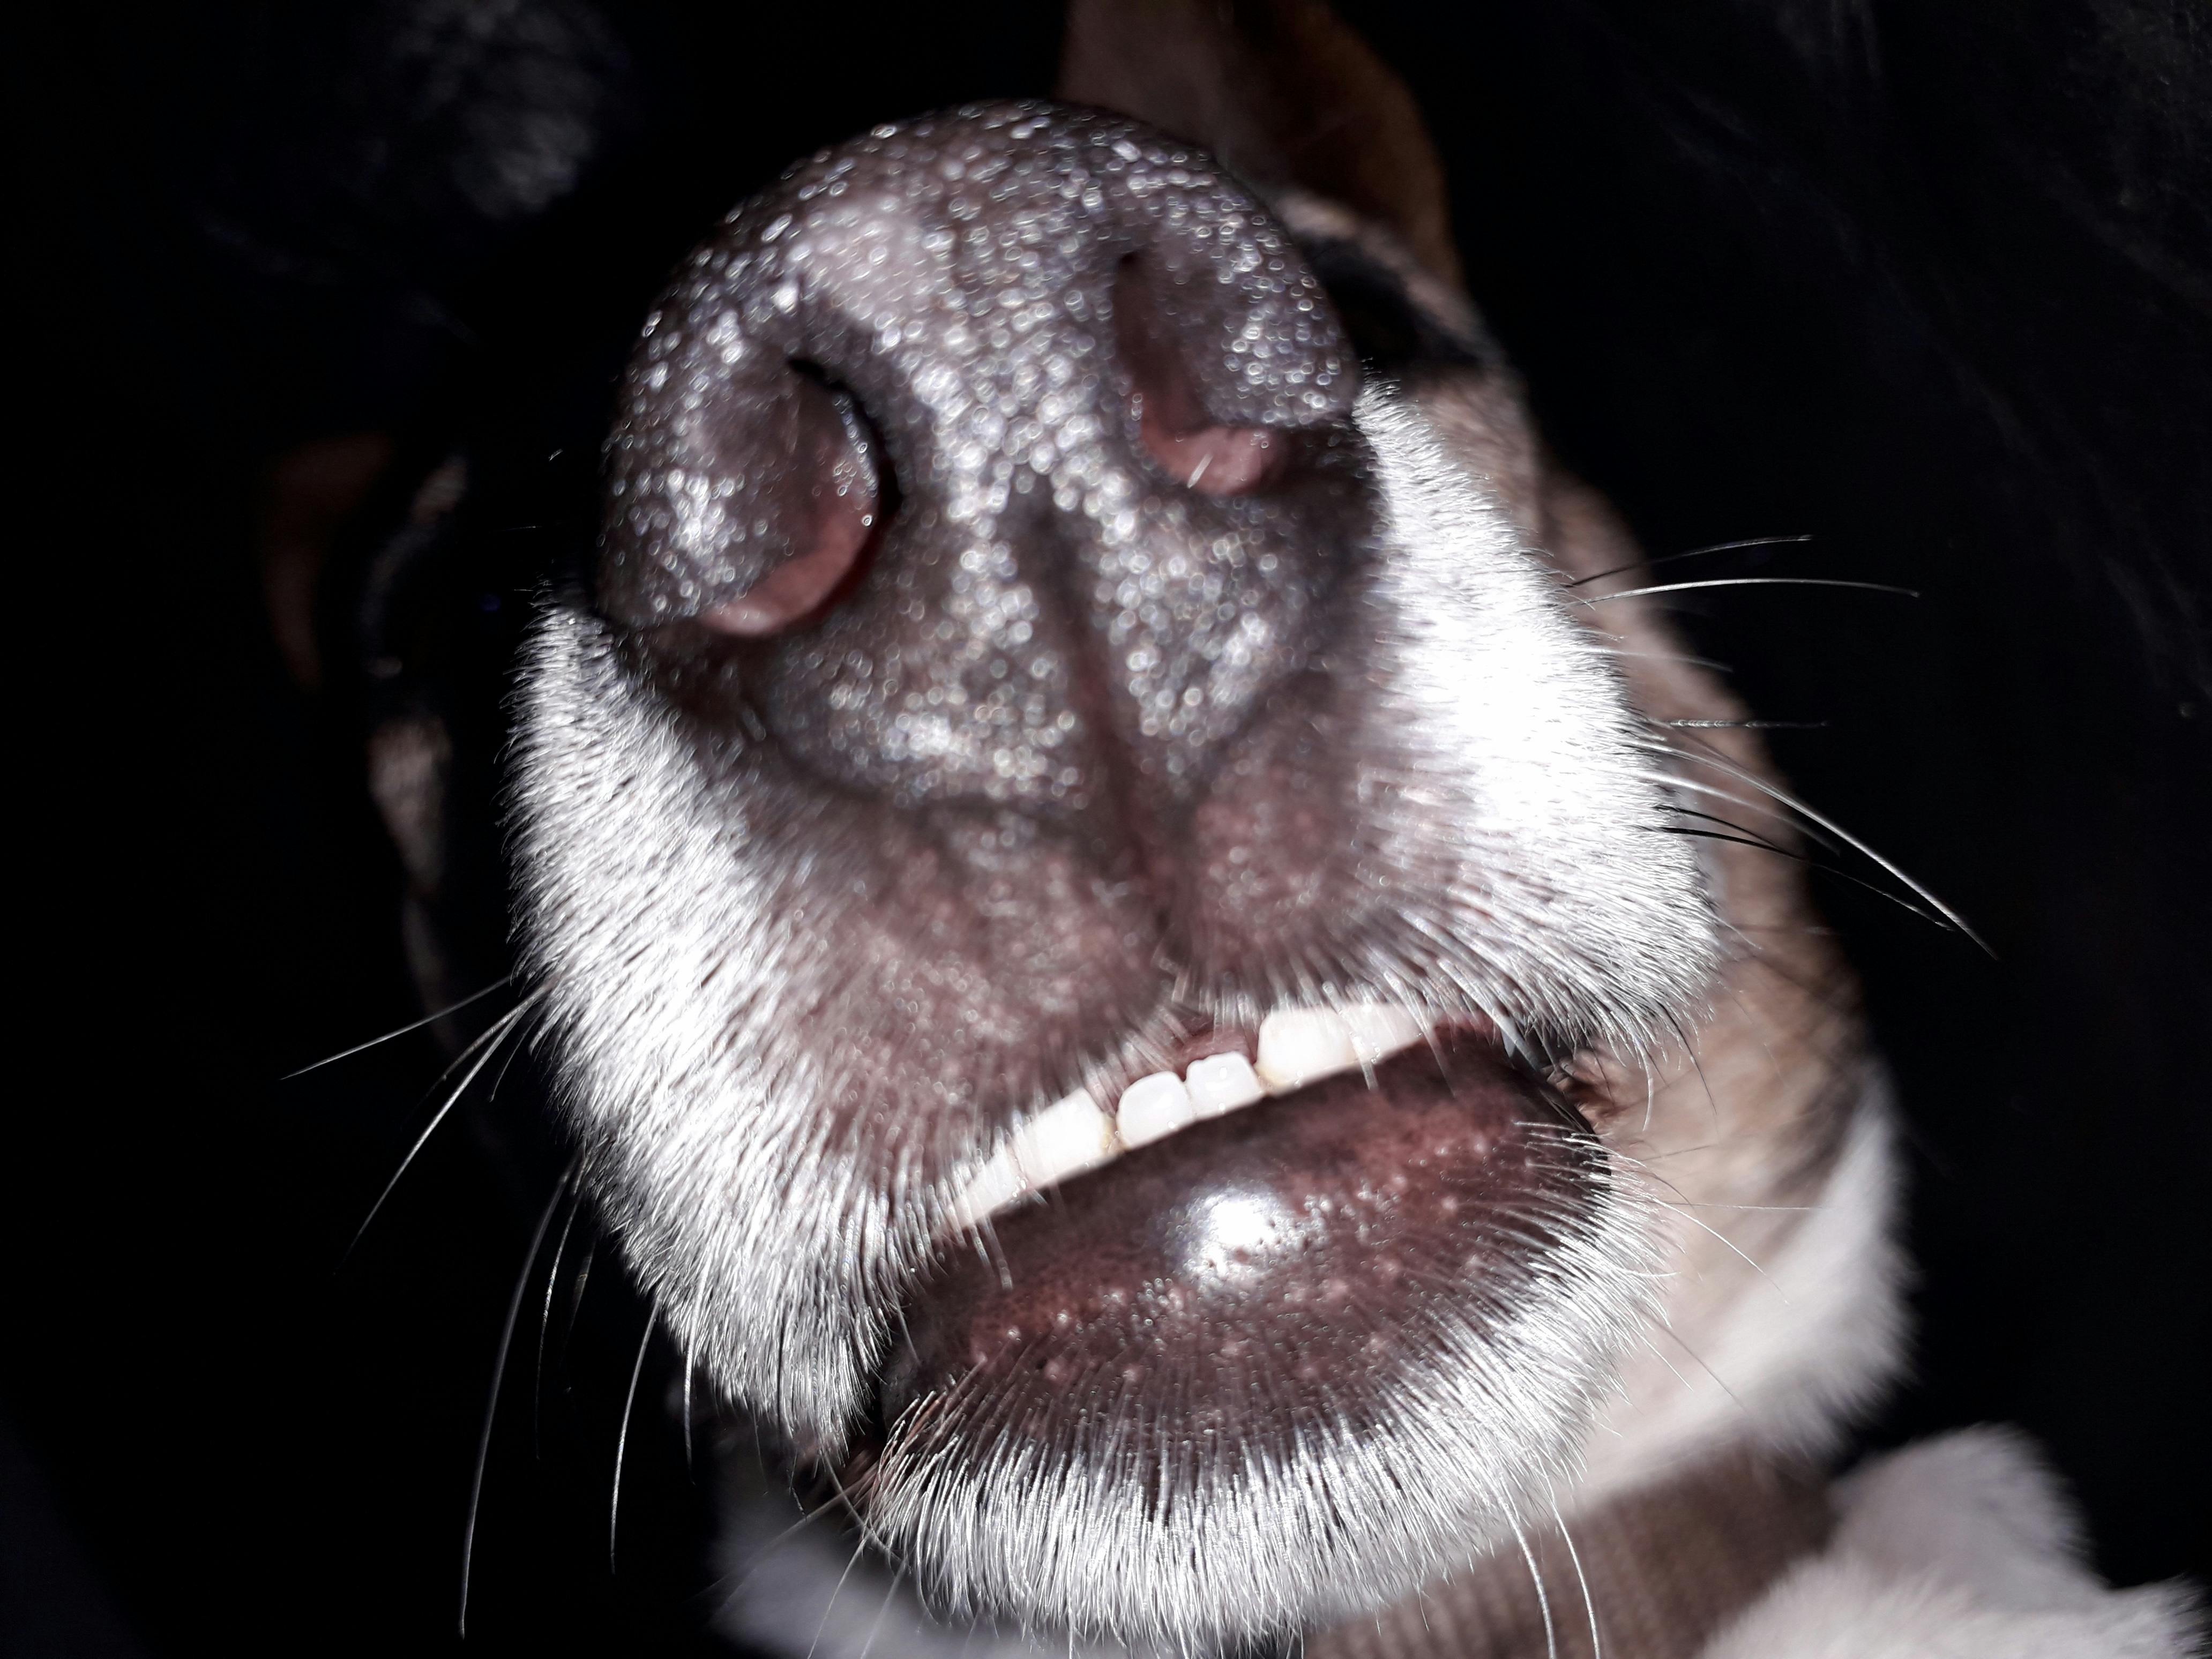 Free stock photo of dog nose